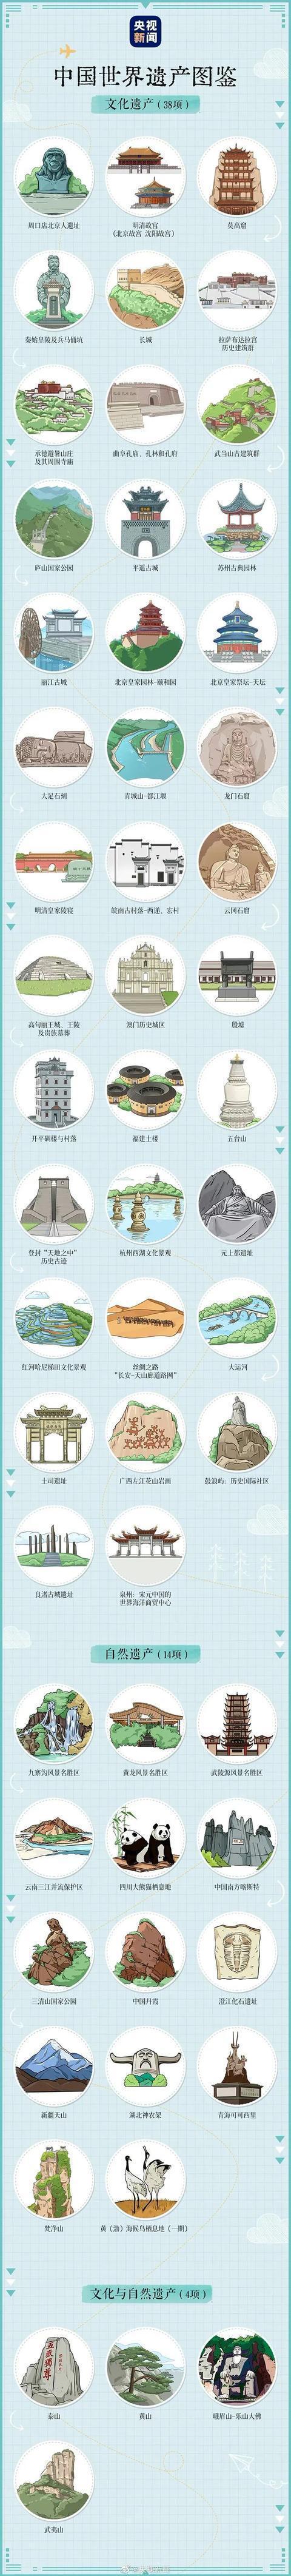 世界文化遗产名录中国